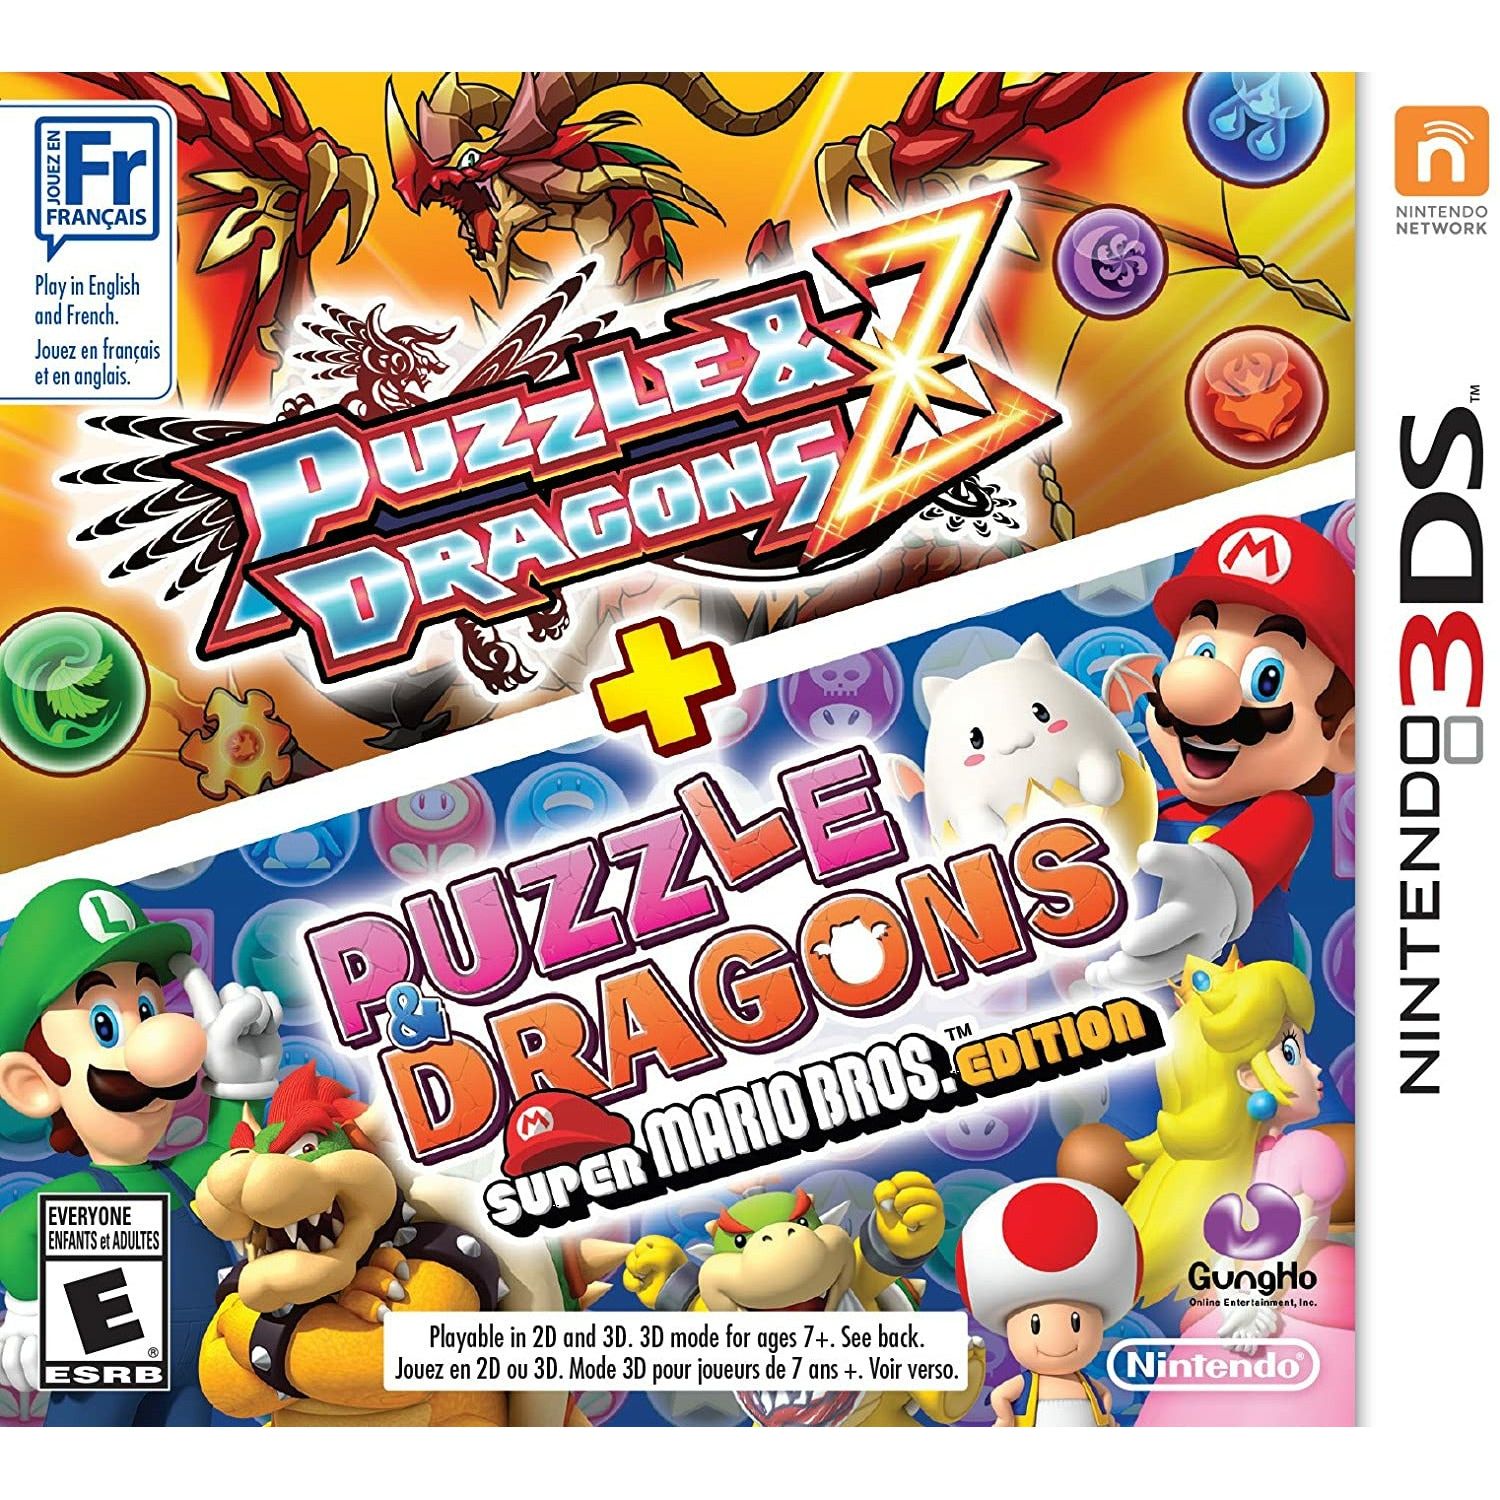 3DS - Puzzle Dragons Z & Puzzle Dragons Super Mario Bros Edition (In Case)